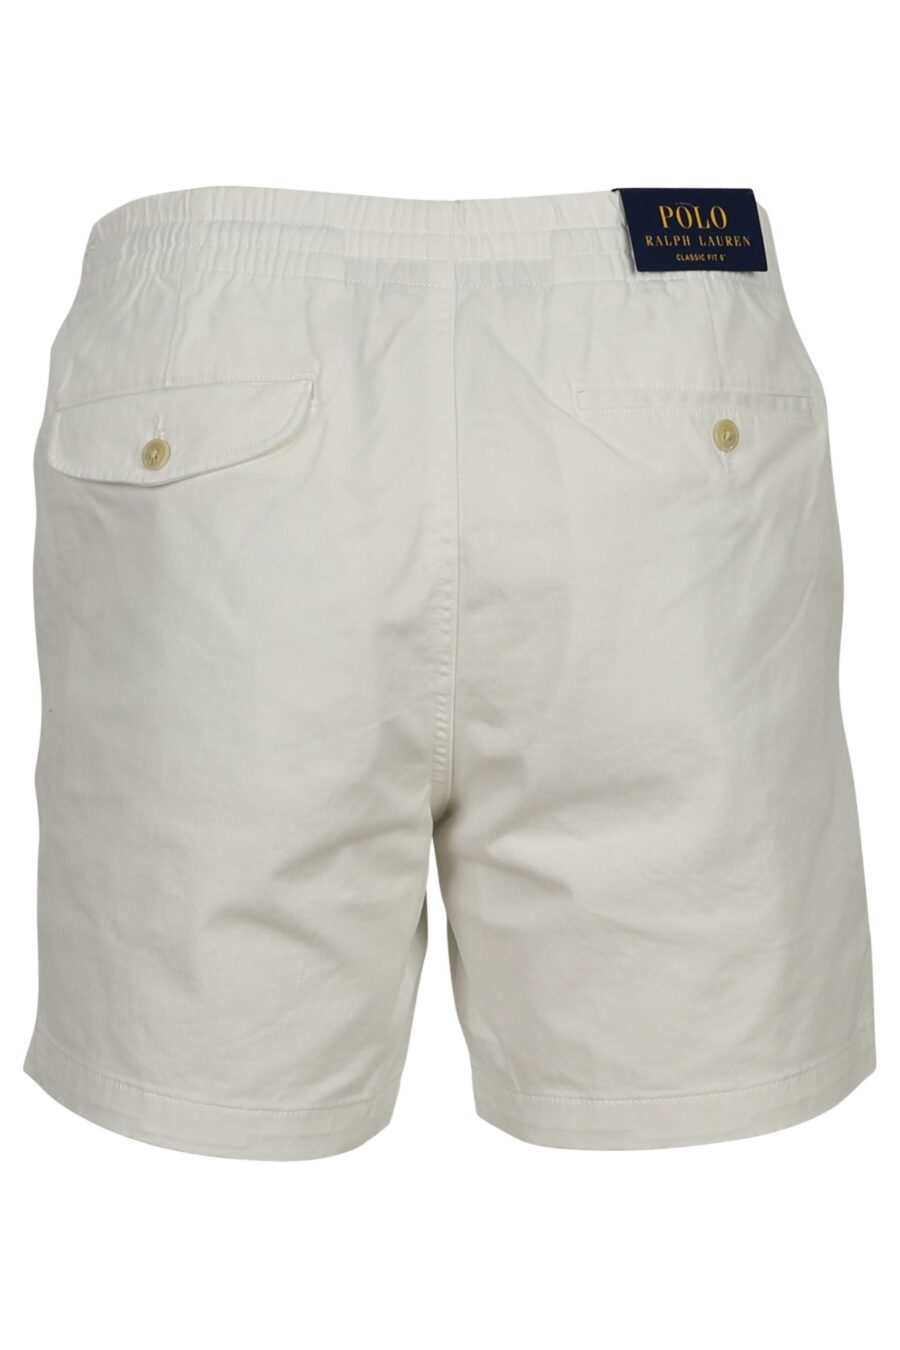 Weiße Shorts mit Mini-Logo "Polo" - 3614712774080 1